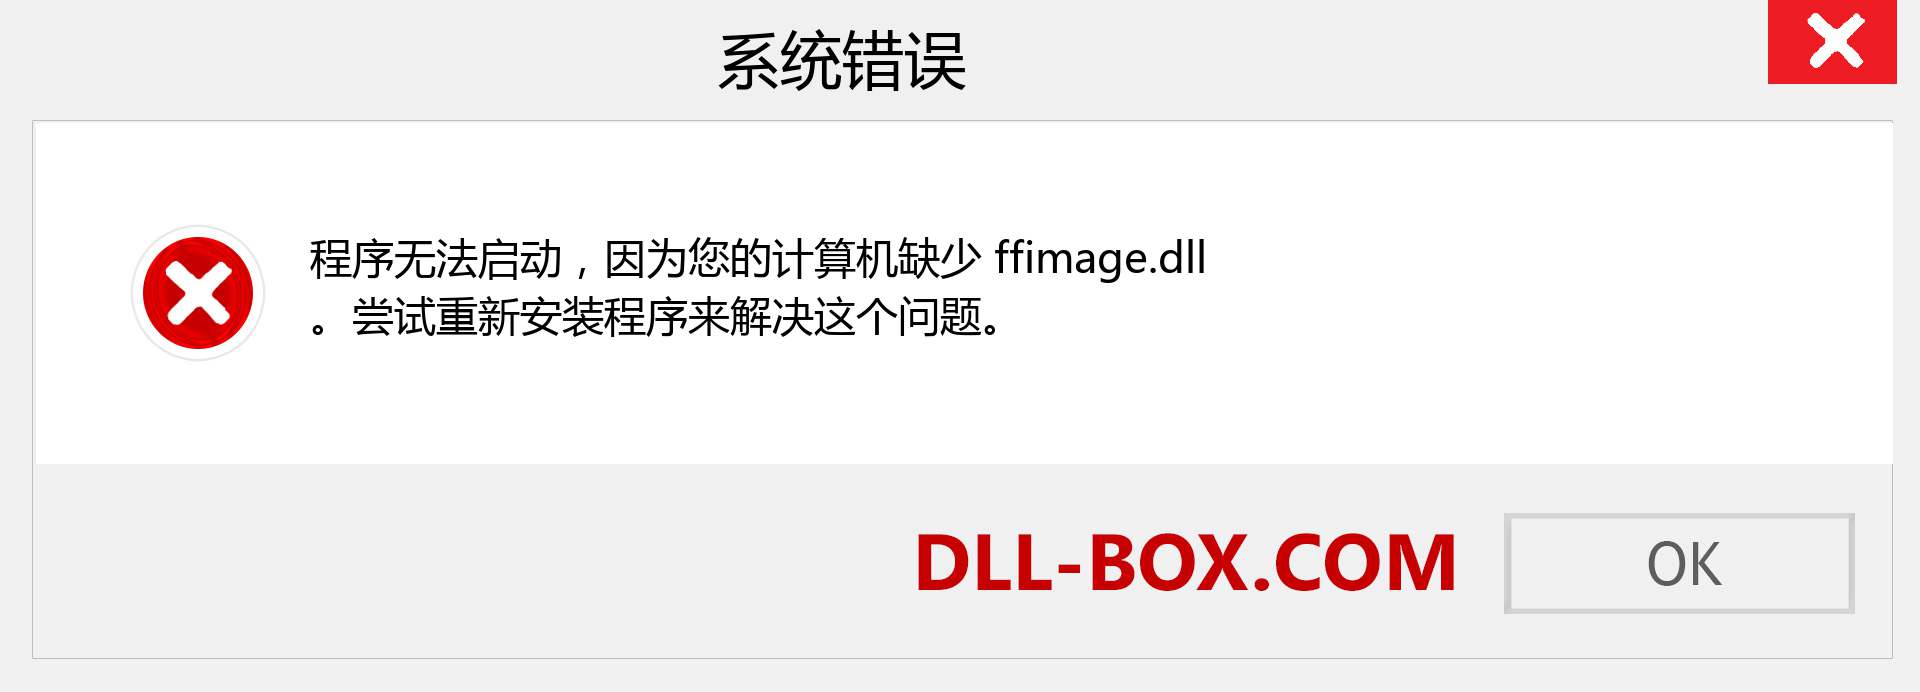 ffimage.dll 文件丢失？。 适用于 Windows 7、8、10 的下载 - 修复 Windows、照片、图像上的 ffimage dll 丢失错误